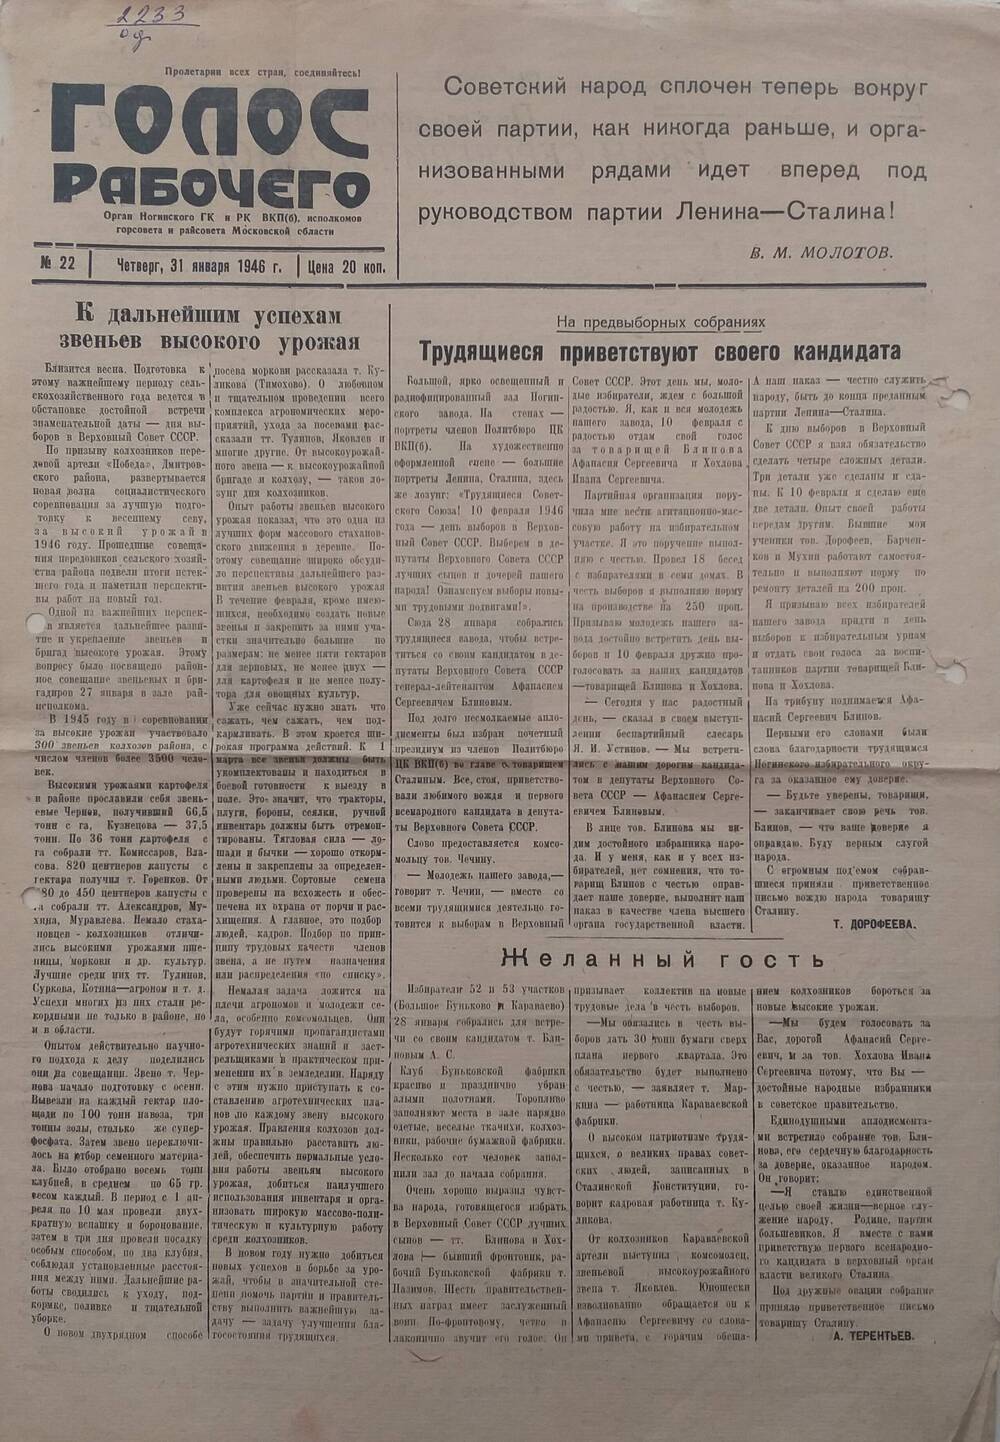 Газета Голос рабочего № 22  орган Ногинского ГК и РК ВПК (б), Исполкомов горсовета и райсовета Московской области, от 
31 января 1946 года.